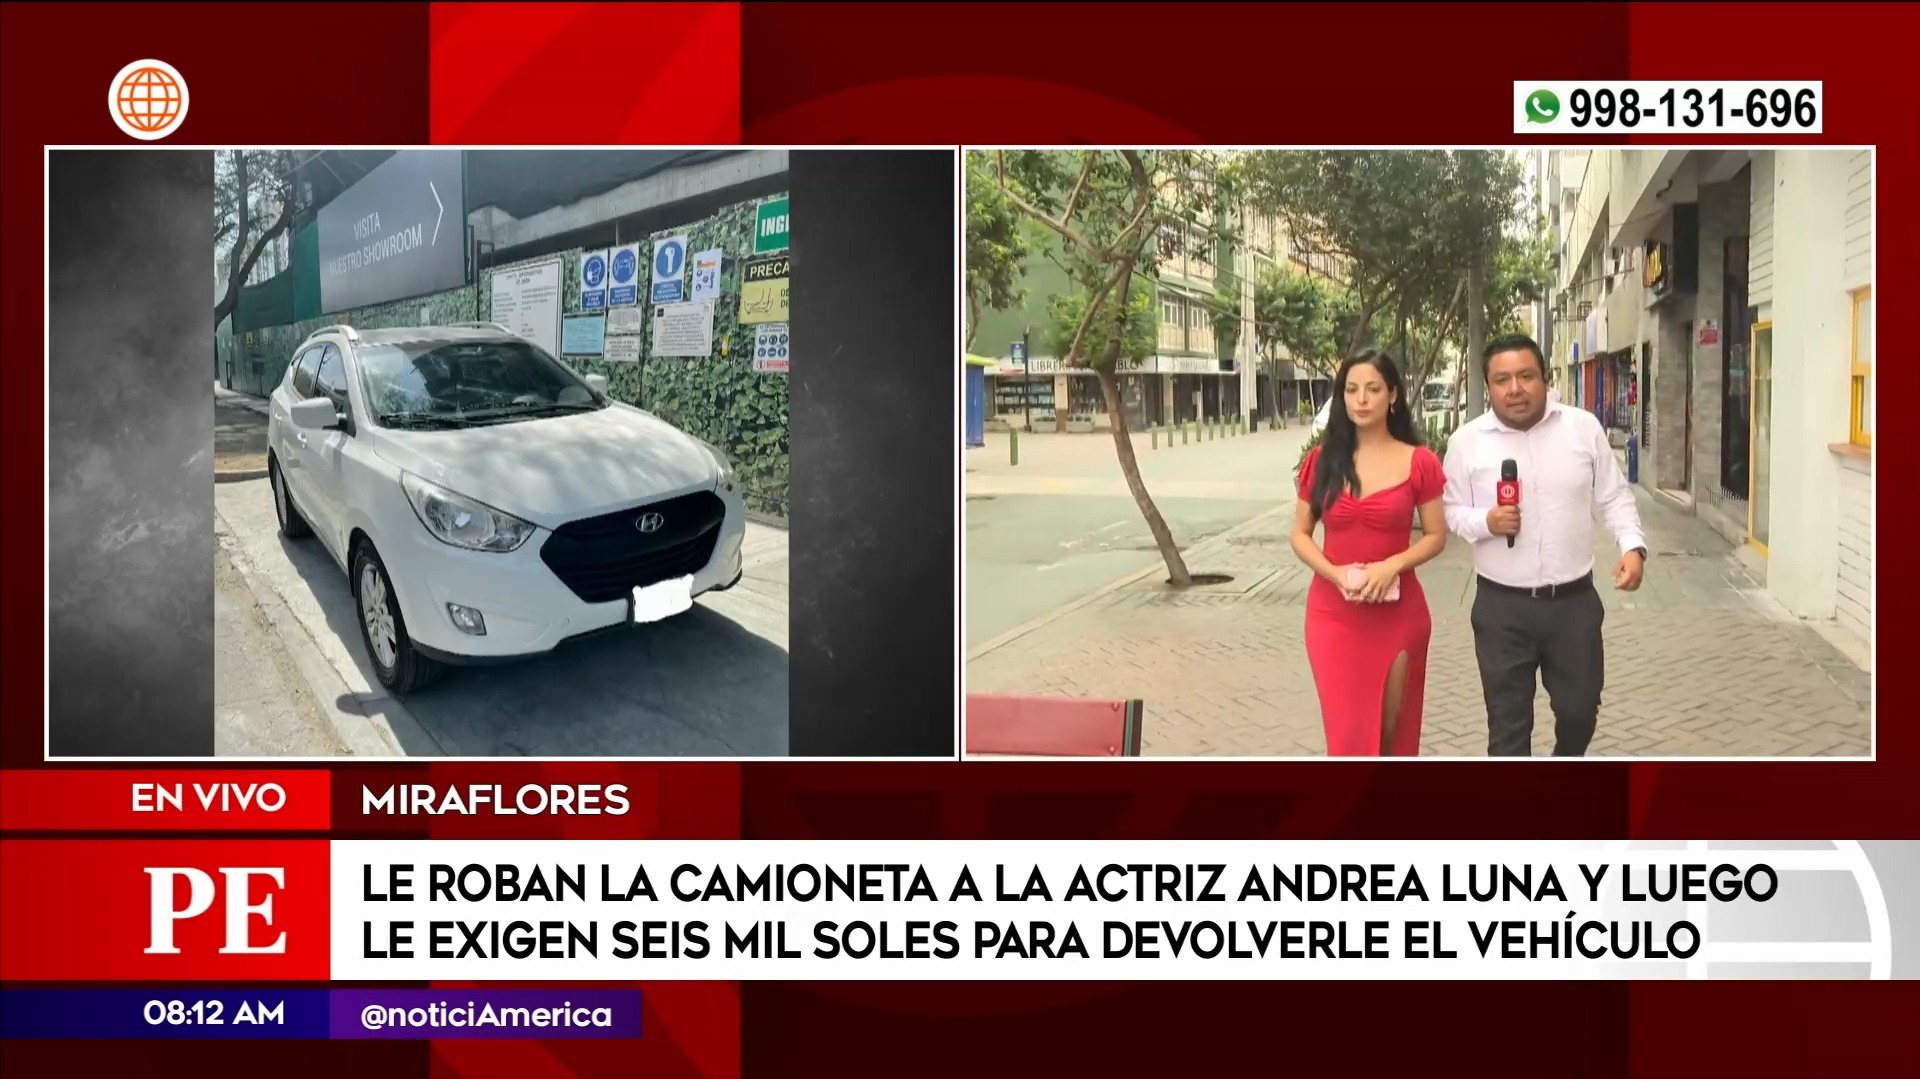 Andrea Luna sufrió el robo de su camioneta el pasado lunes 18 de marzo, en Miraflores. fuente: AméricaTV